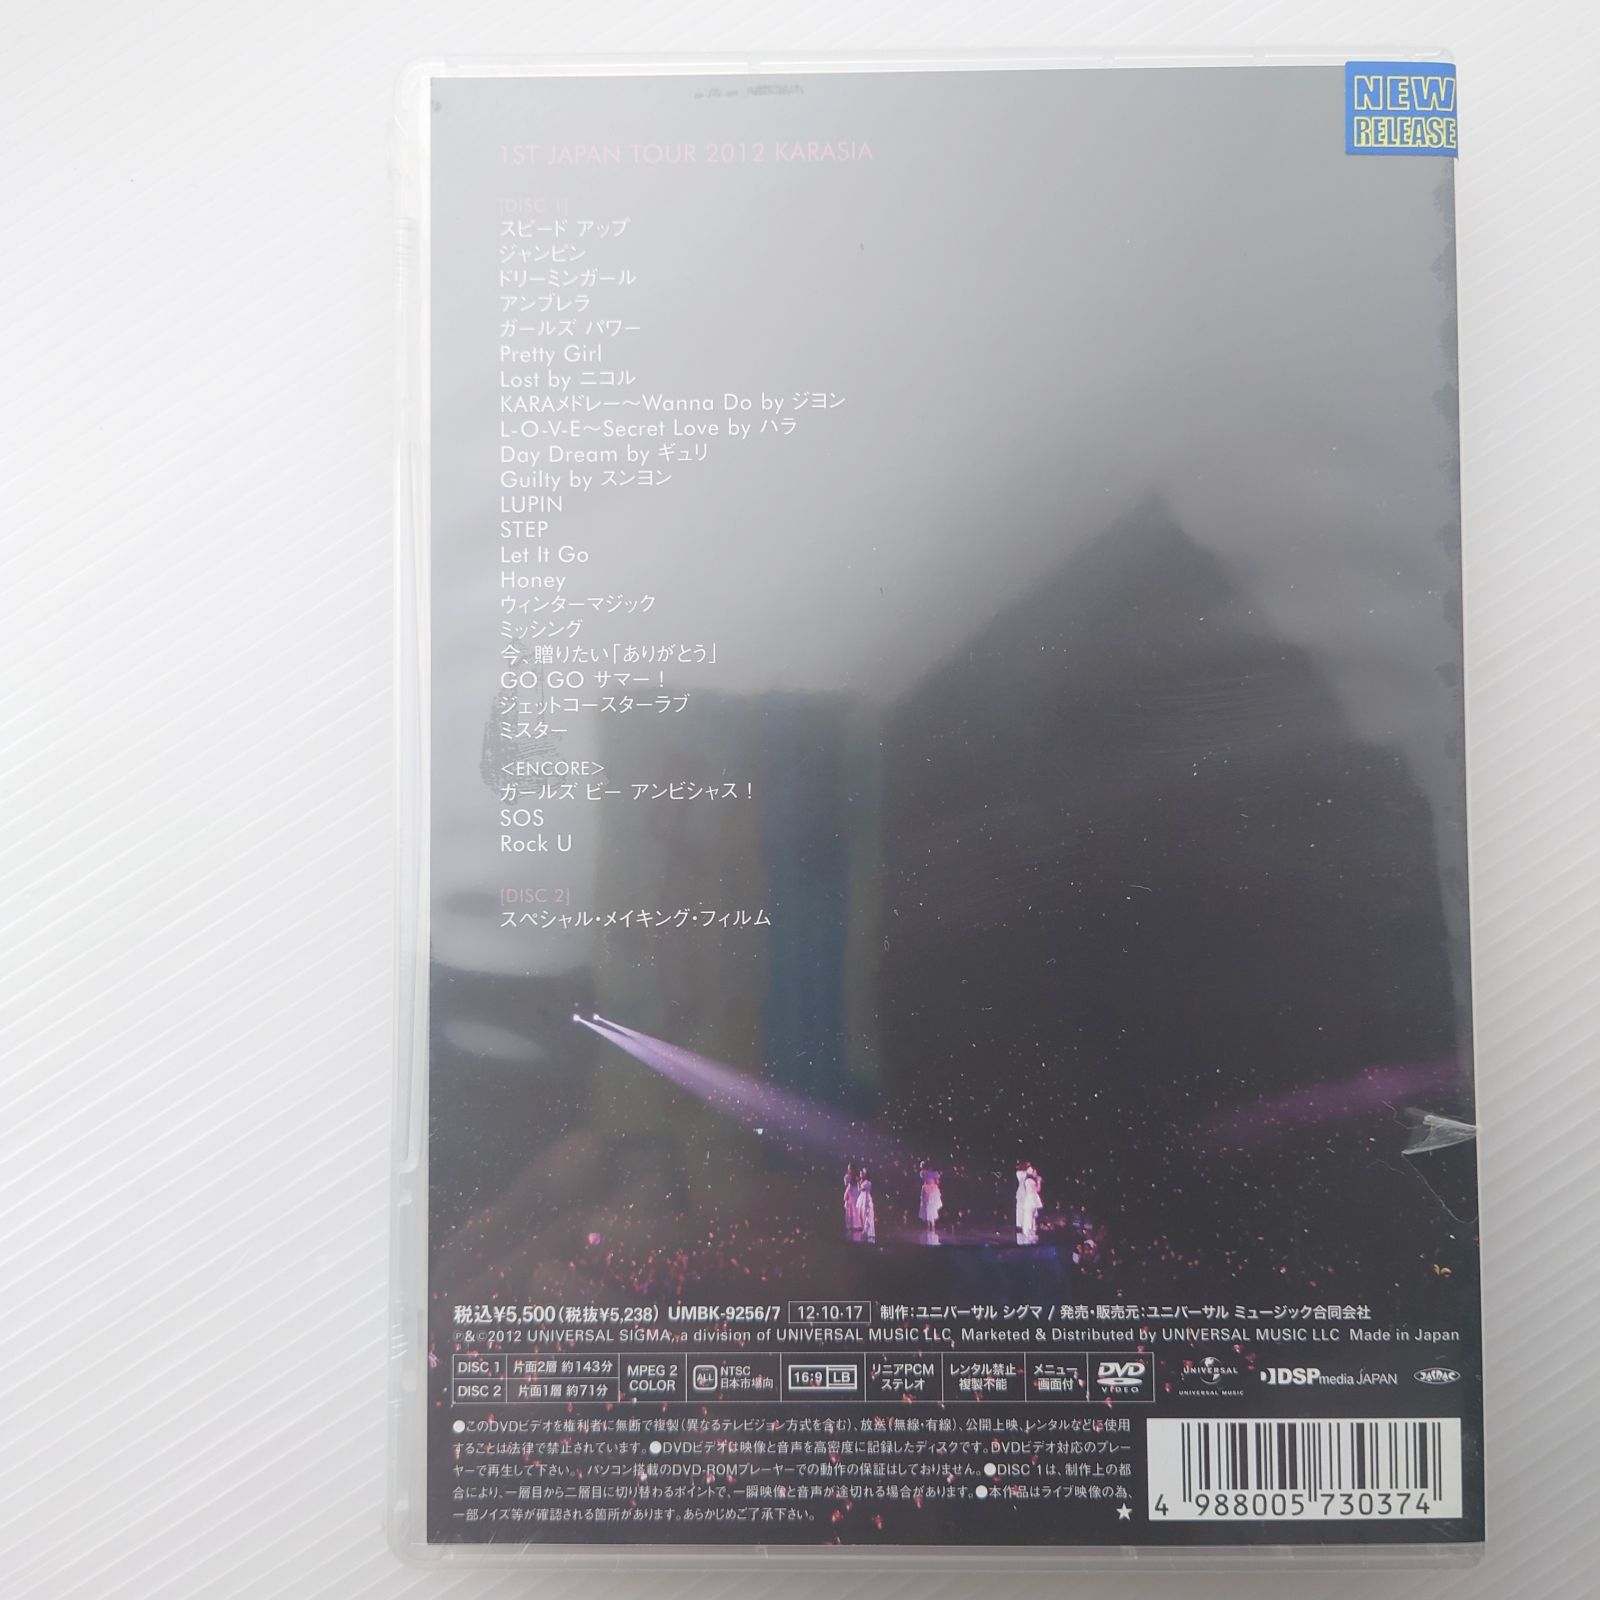 DVD】KARA/カラ KARA 1st JAPAN TOUR 2012 KARASIA 初回限定盤【2012/2枚組/新品未開封】 - メルカリ